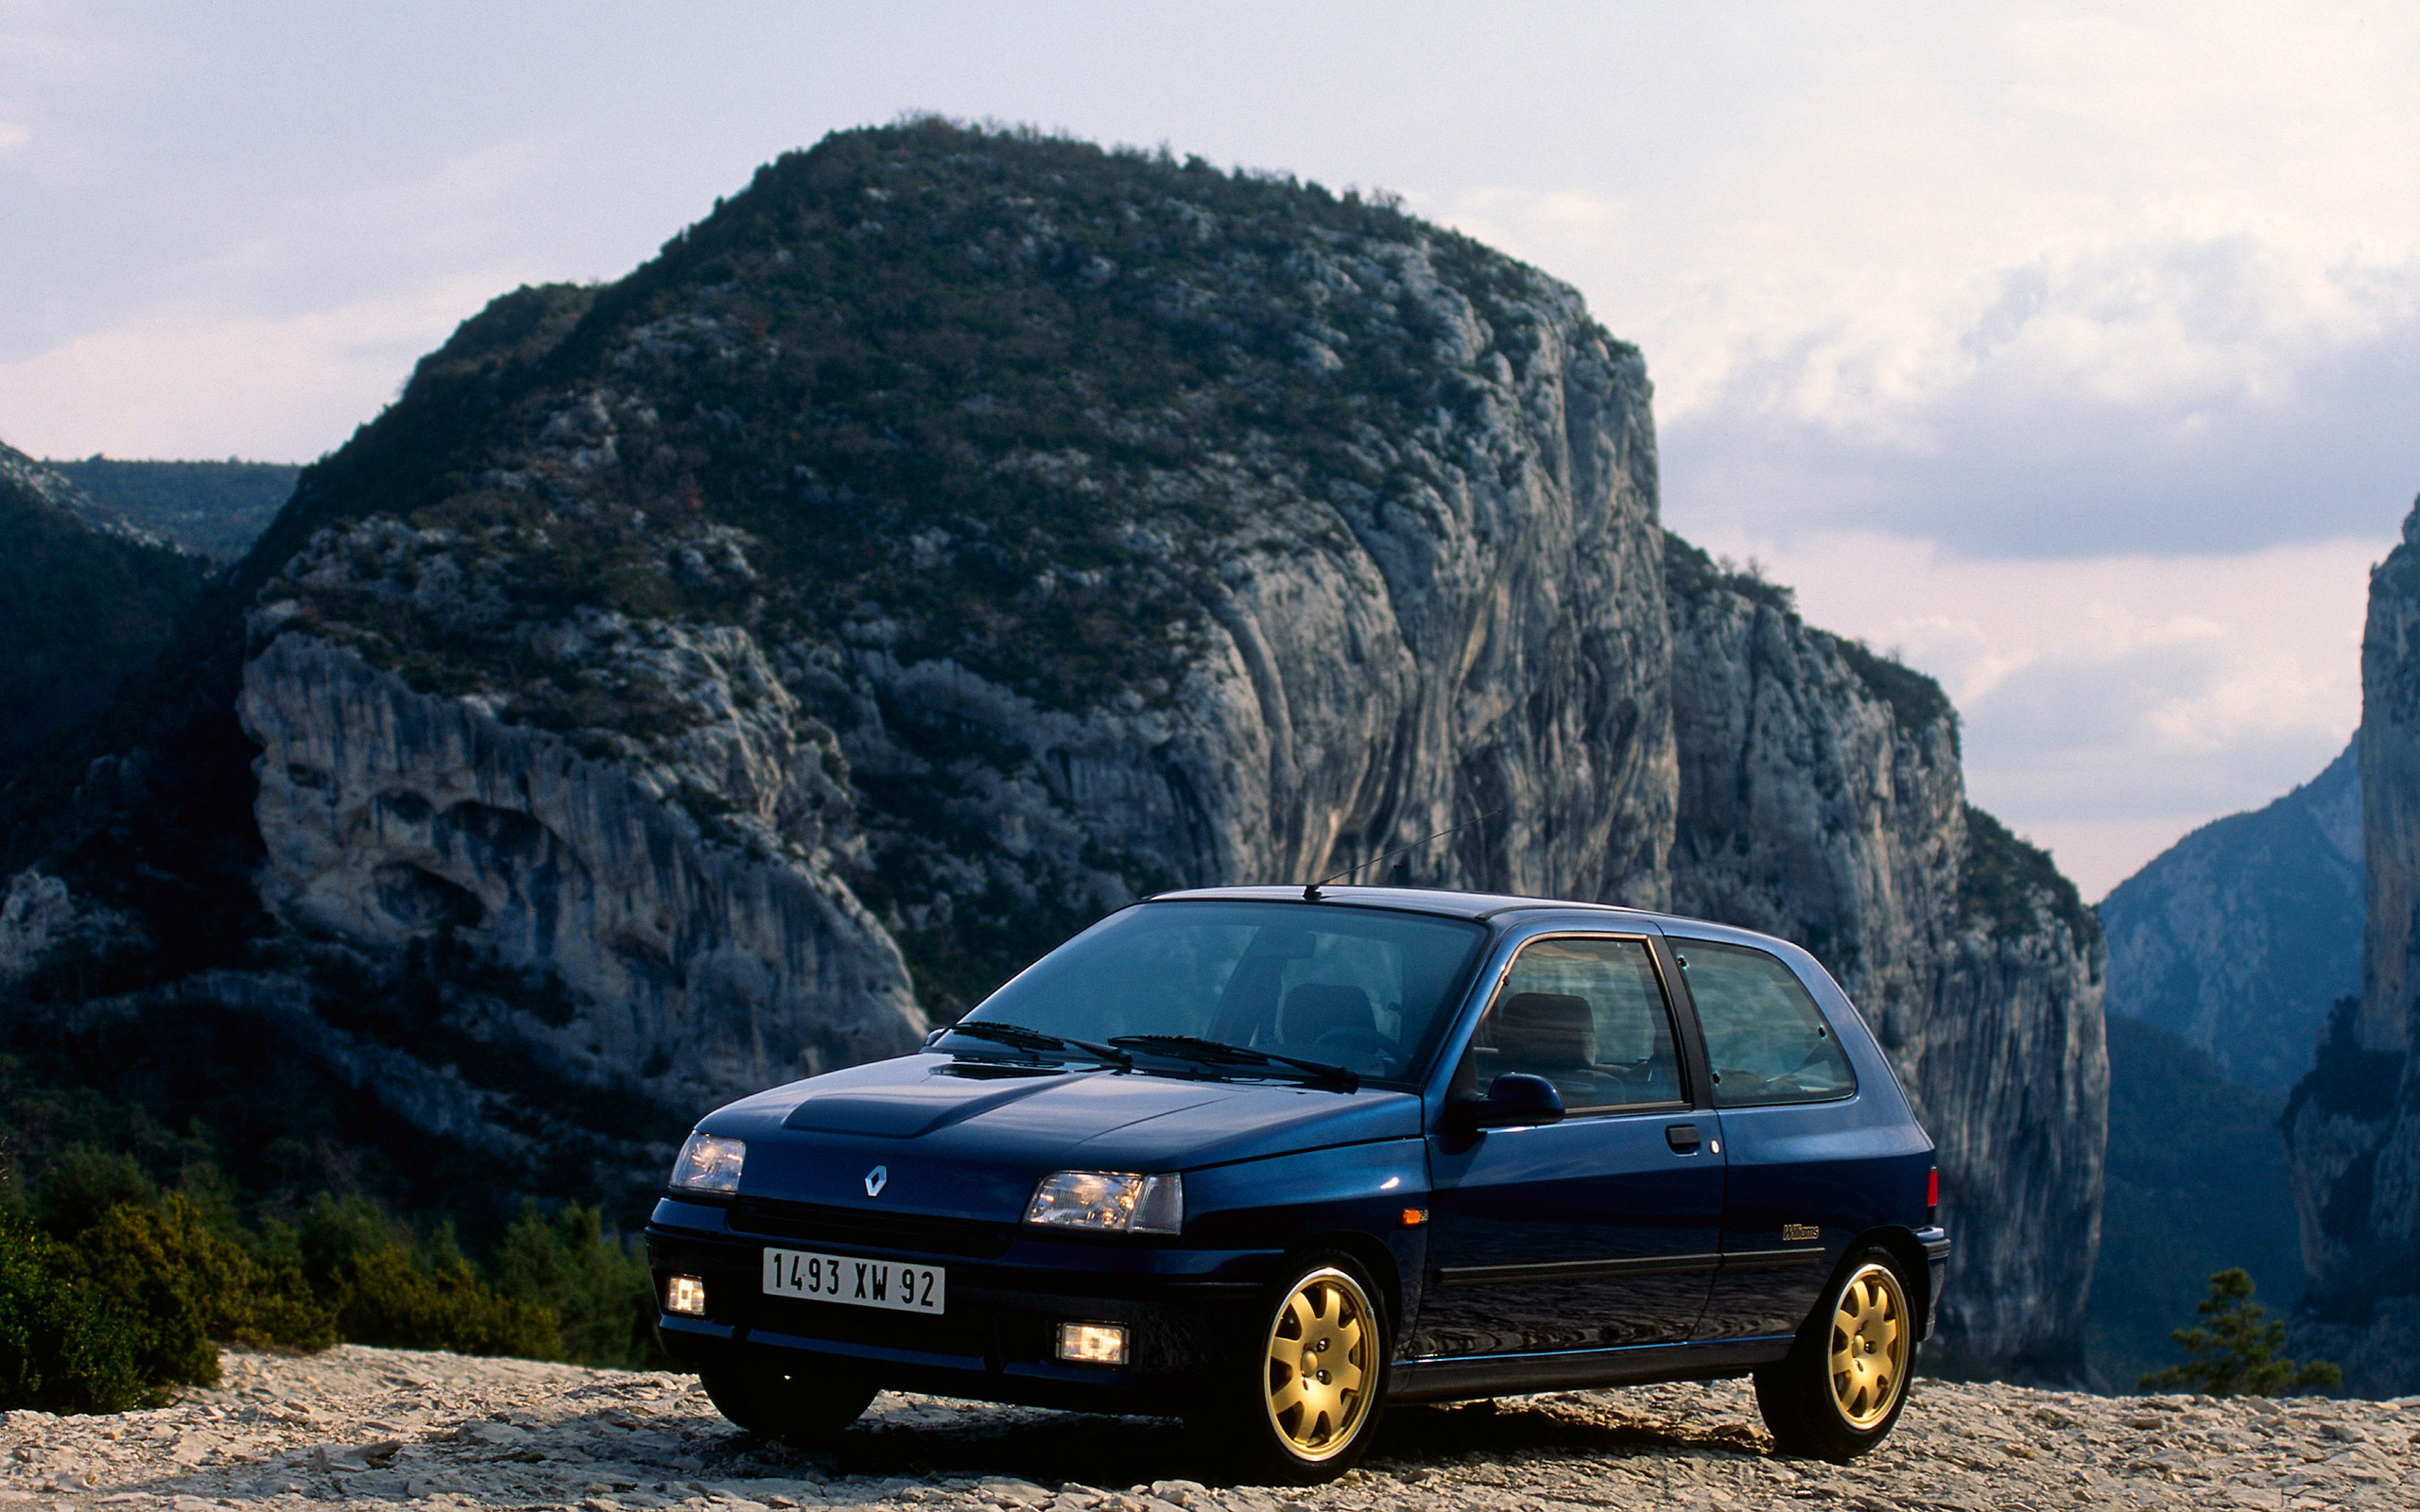  1993 Renault Clio Williams Wallpaper.